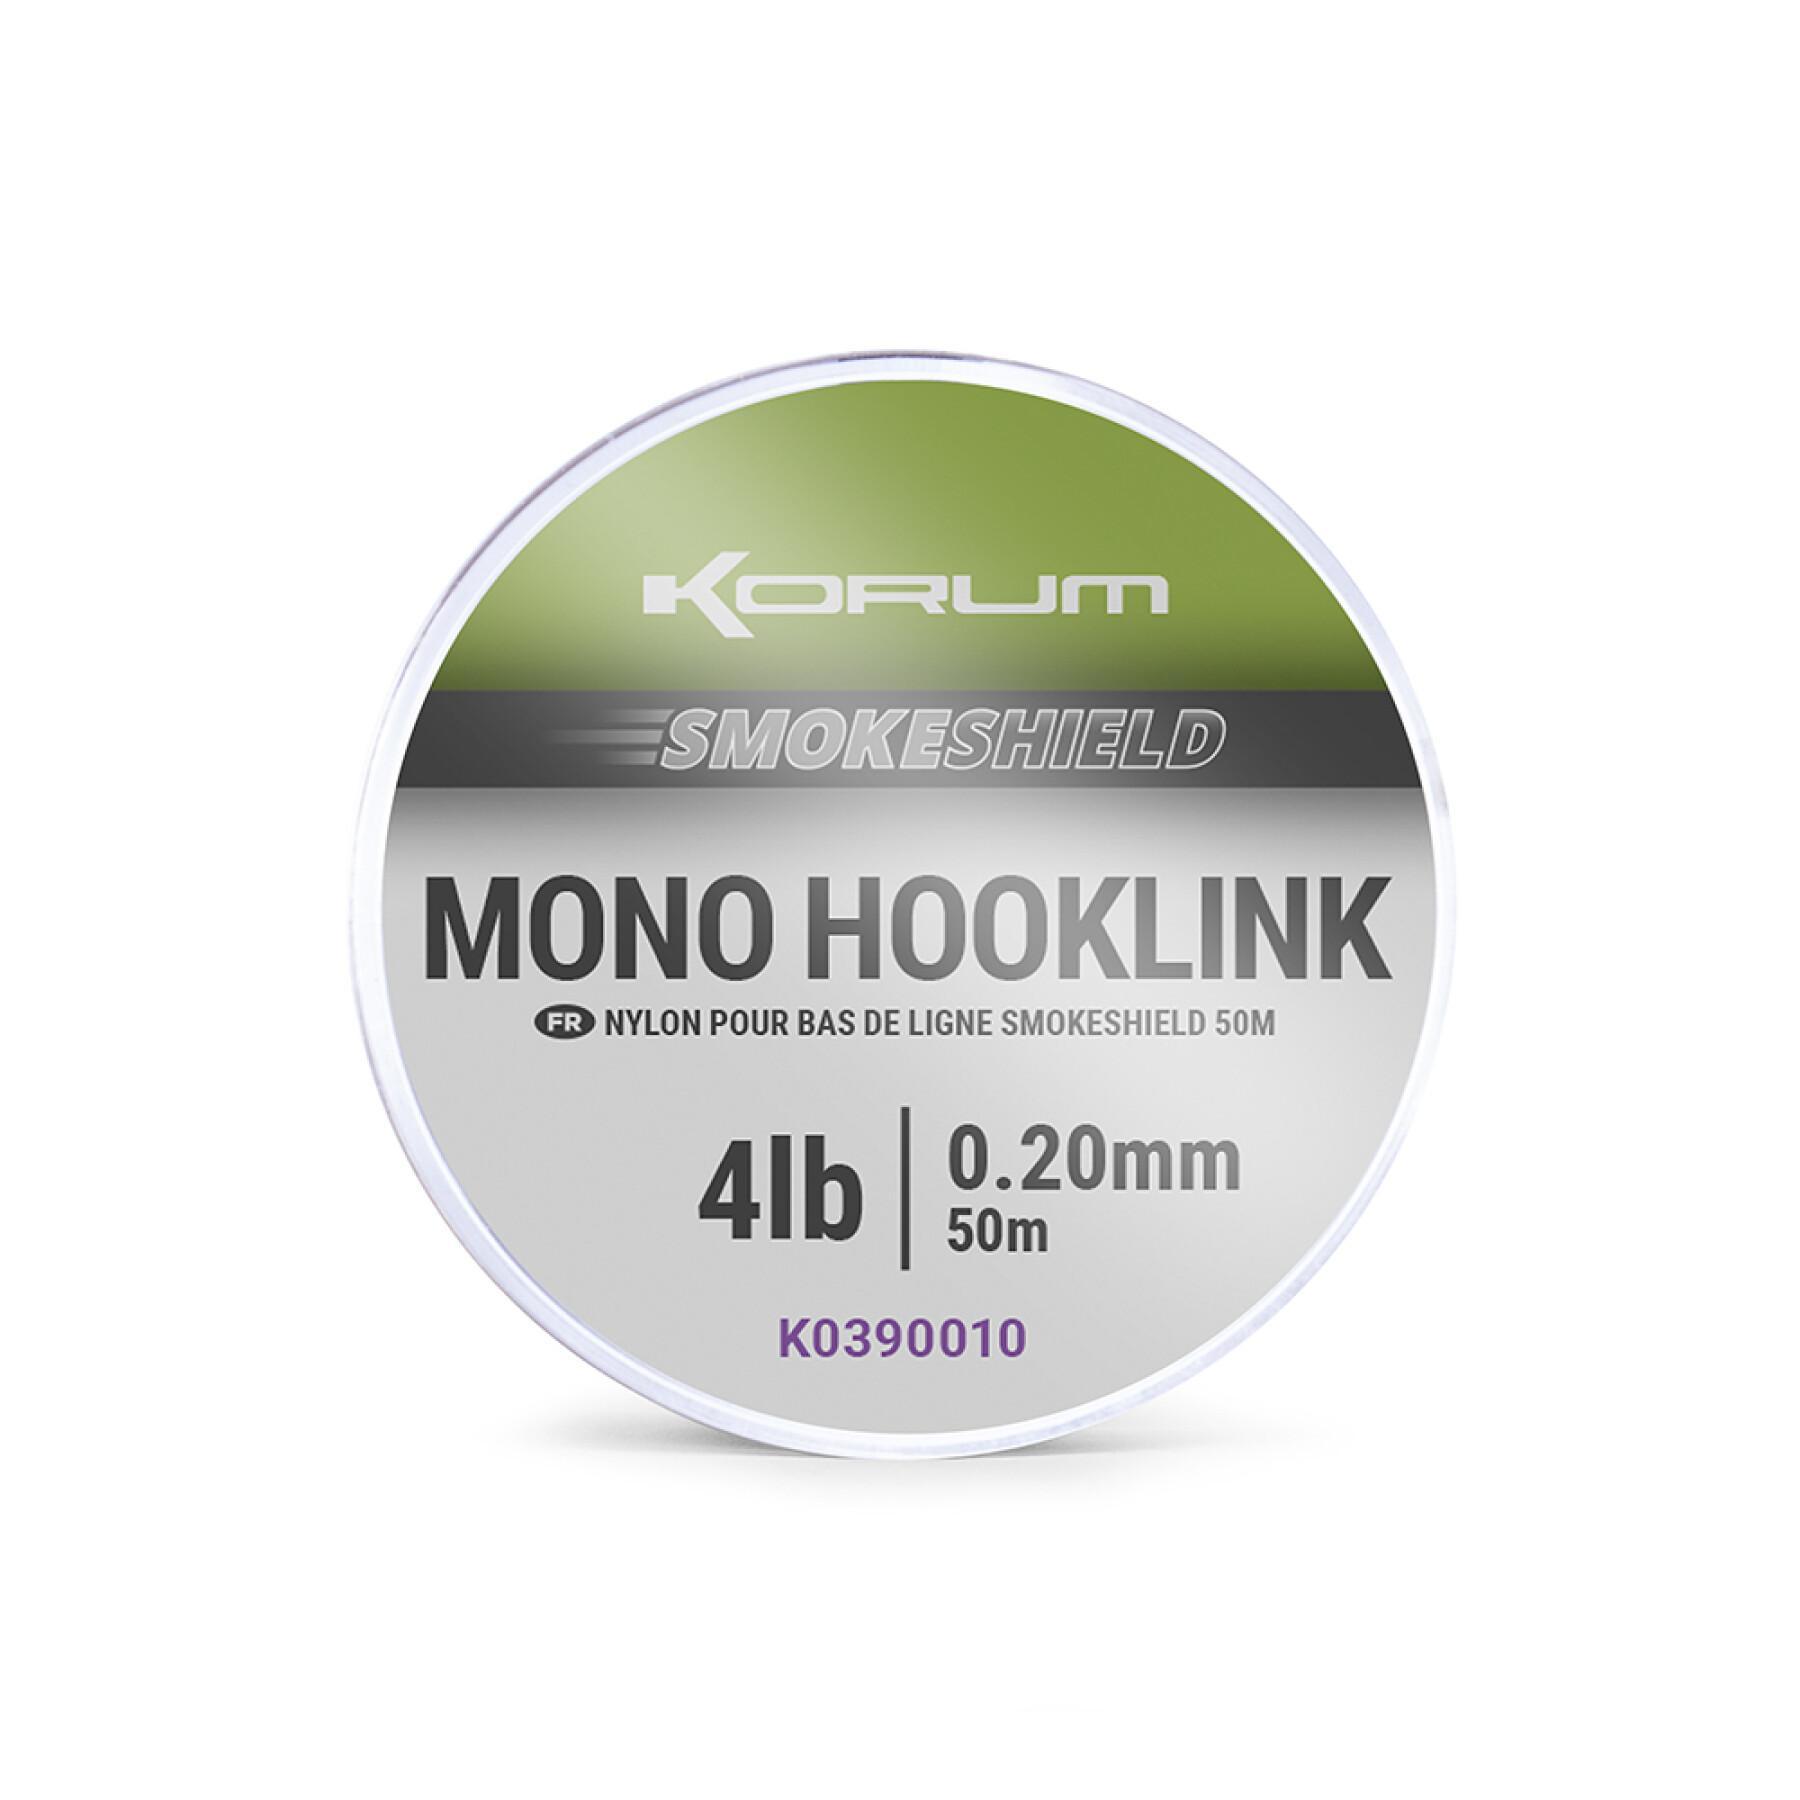 Collegamento Korum smokeshield mono hooklink 0,23mm 1x5